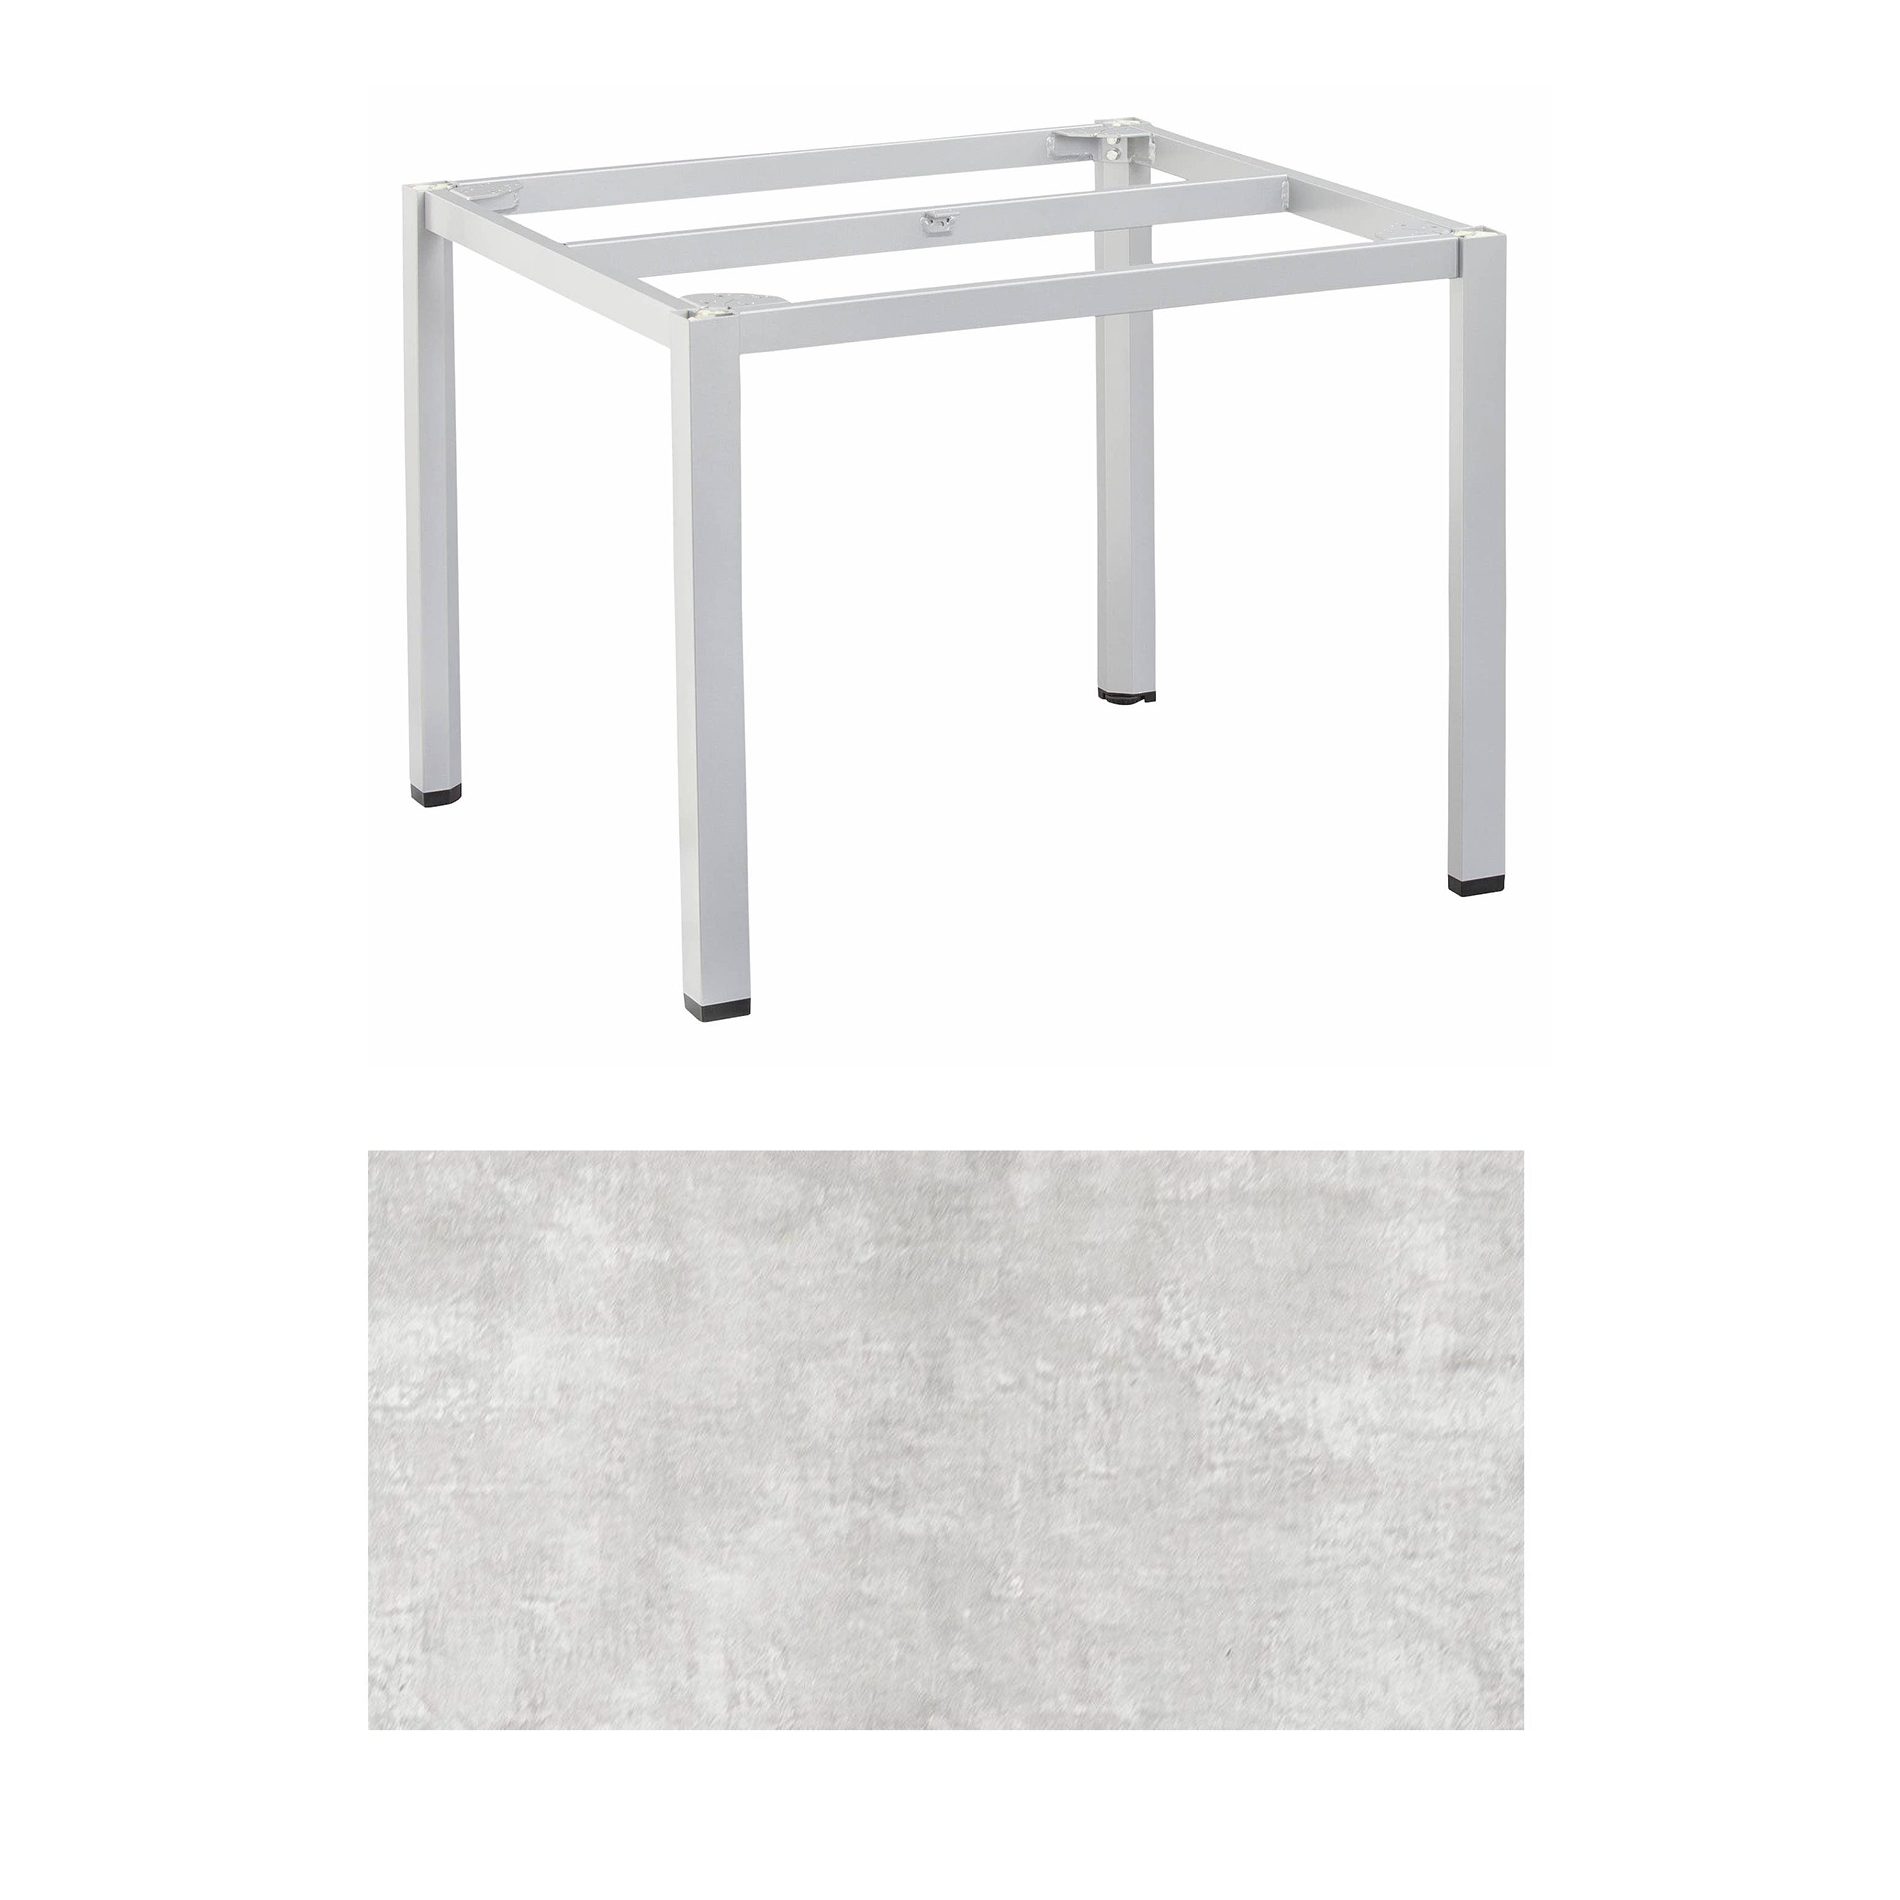 Kettler "Cubic" Tischgestell 95x95 cm, Aluminium silber mit HPL-Platte hellgrau meliert